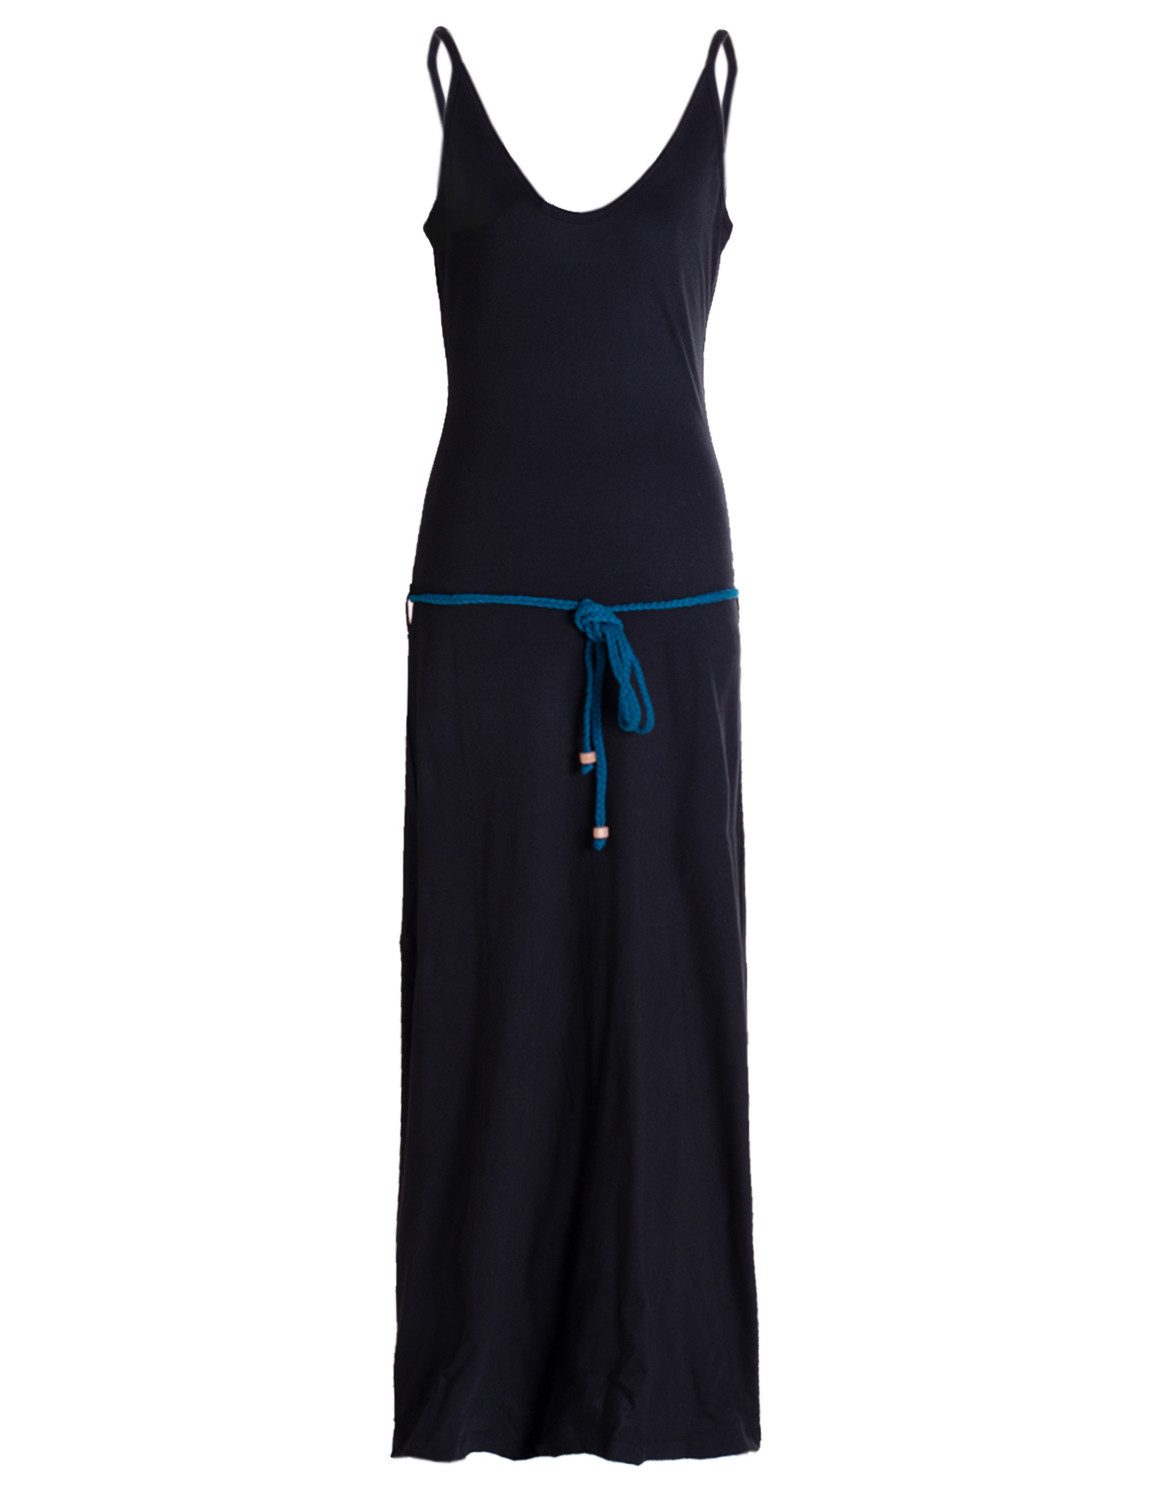 Vishes Sommerkleid Langes Einfaches Damen Träger Sommer-Kleid,Ökologisch nachhaltig Ethno, Goa, Hippie Style